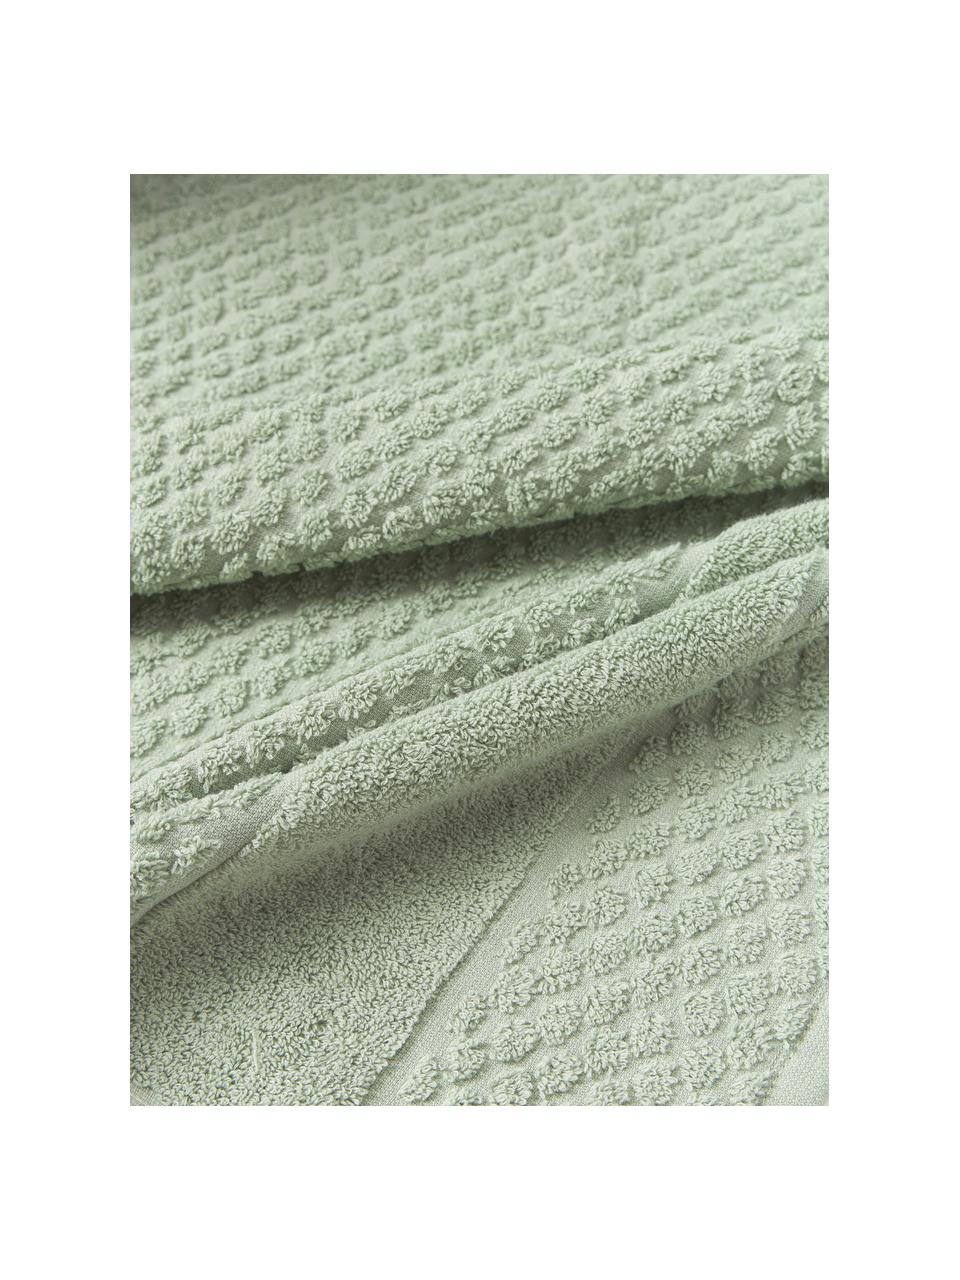 Ręcznik Katharina, różne rozmiary, Szałwiowy zielony, Ręcznik, S 50 x D 100 cm, 2 szt.